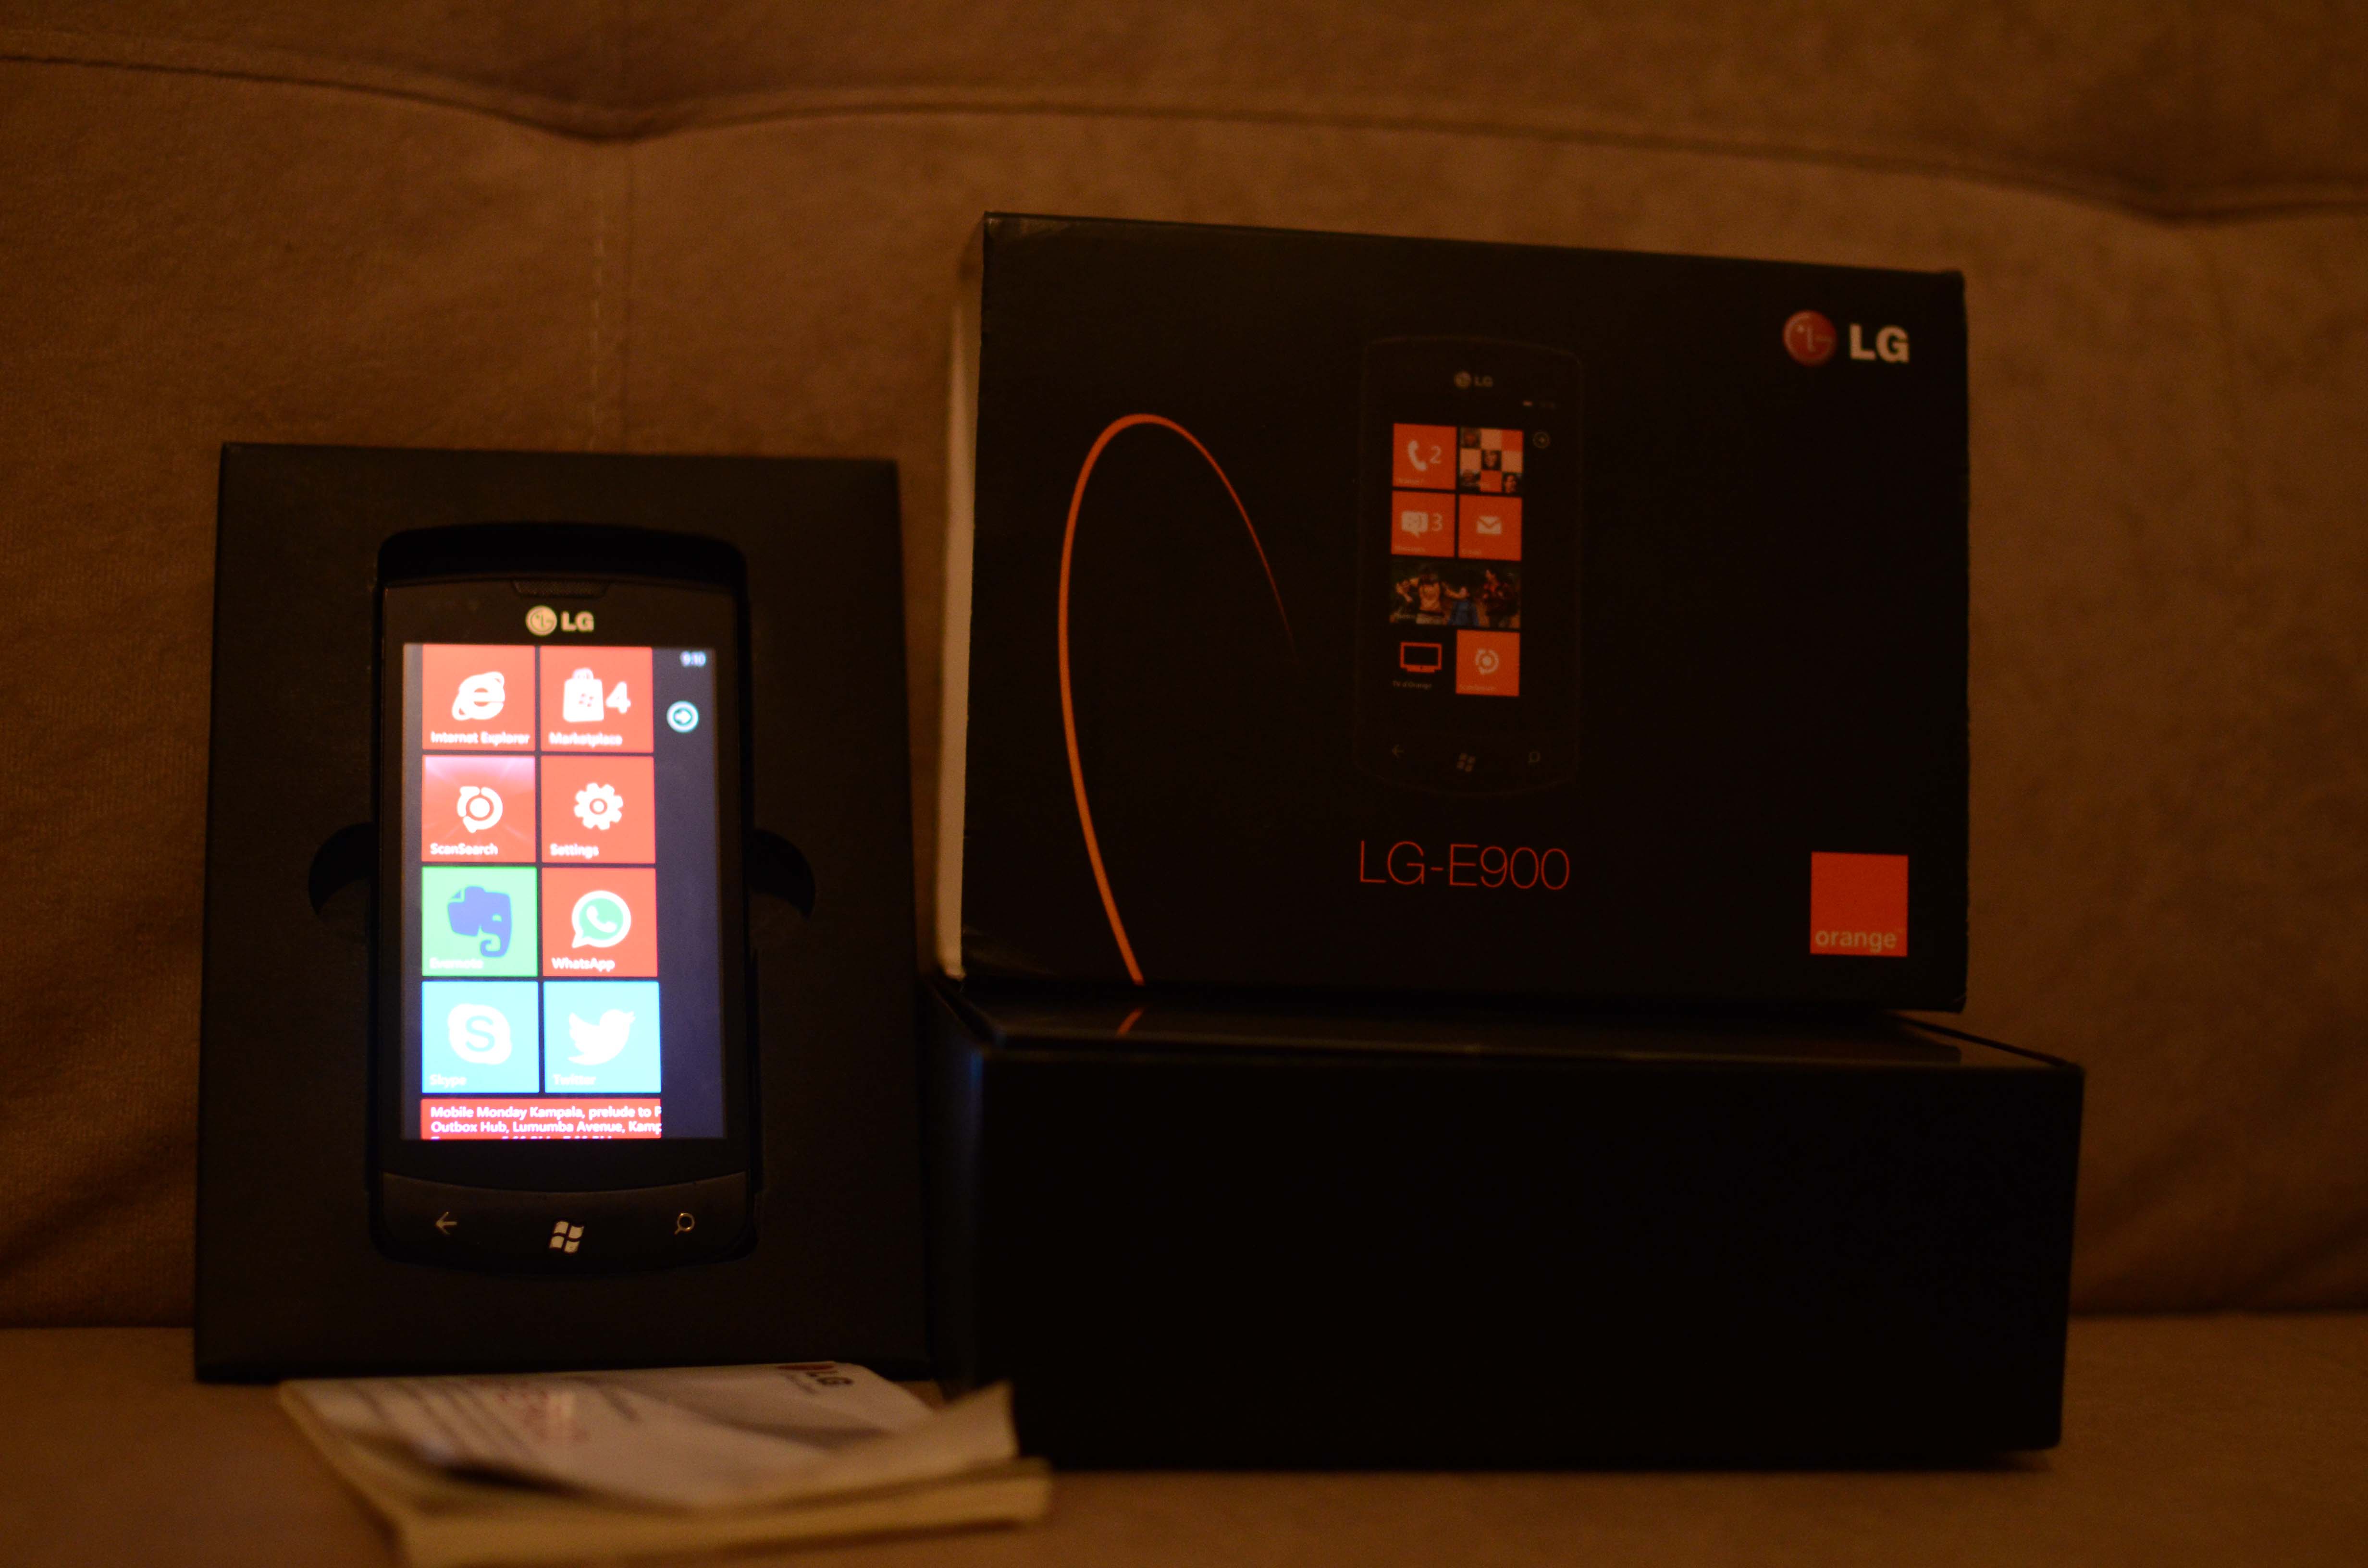 LG E900